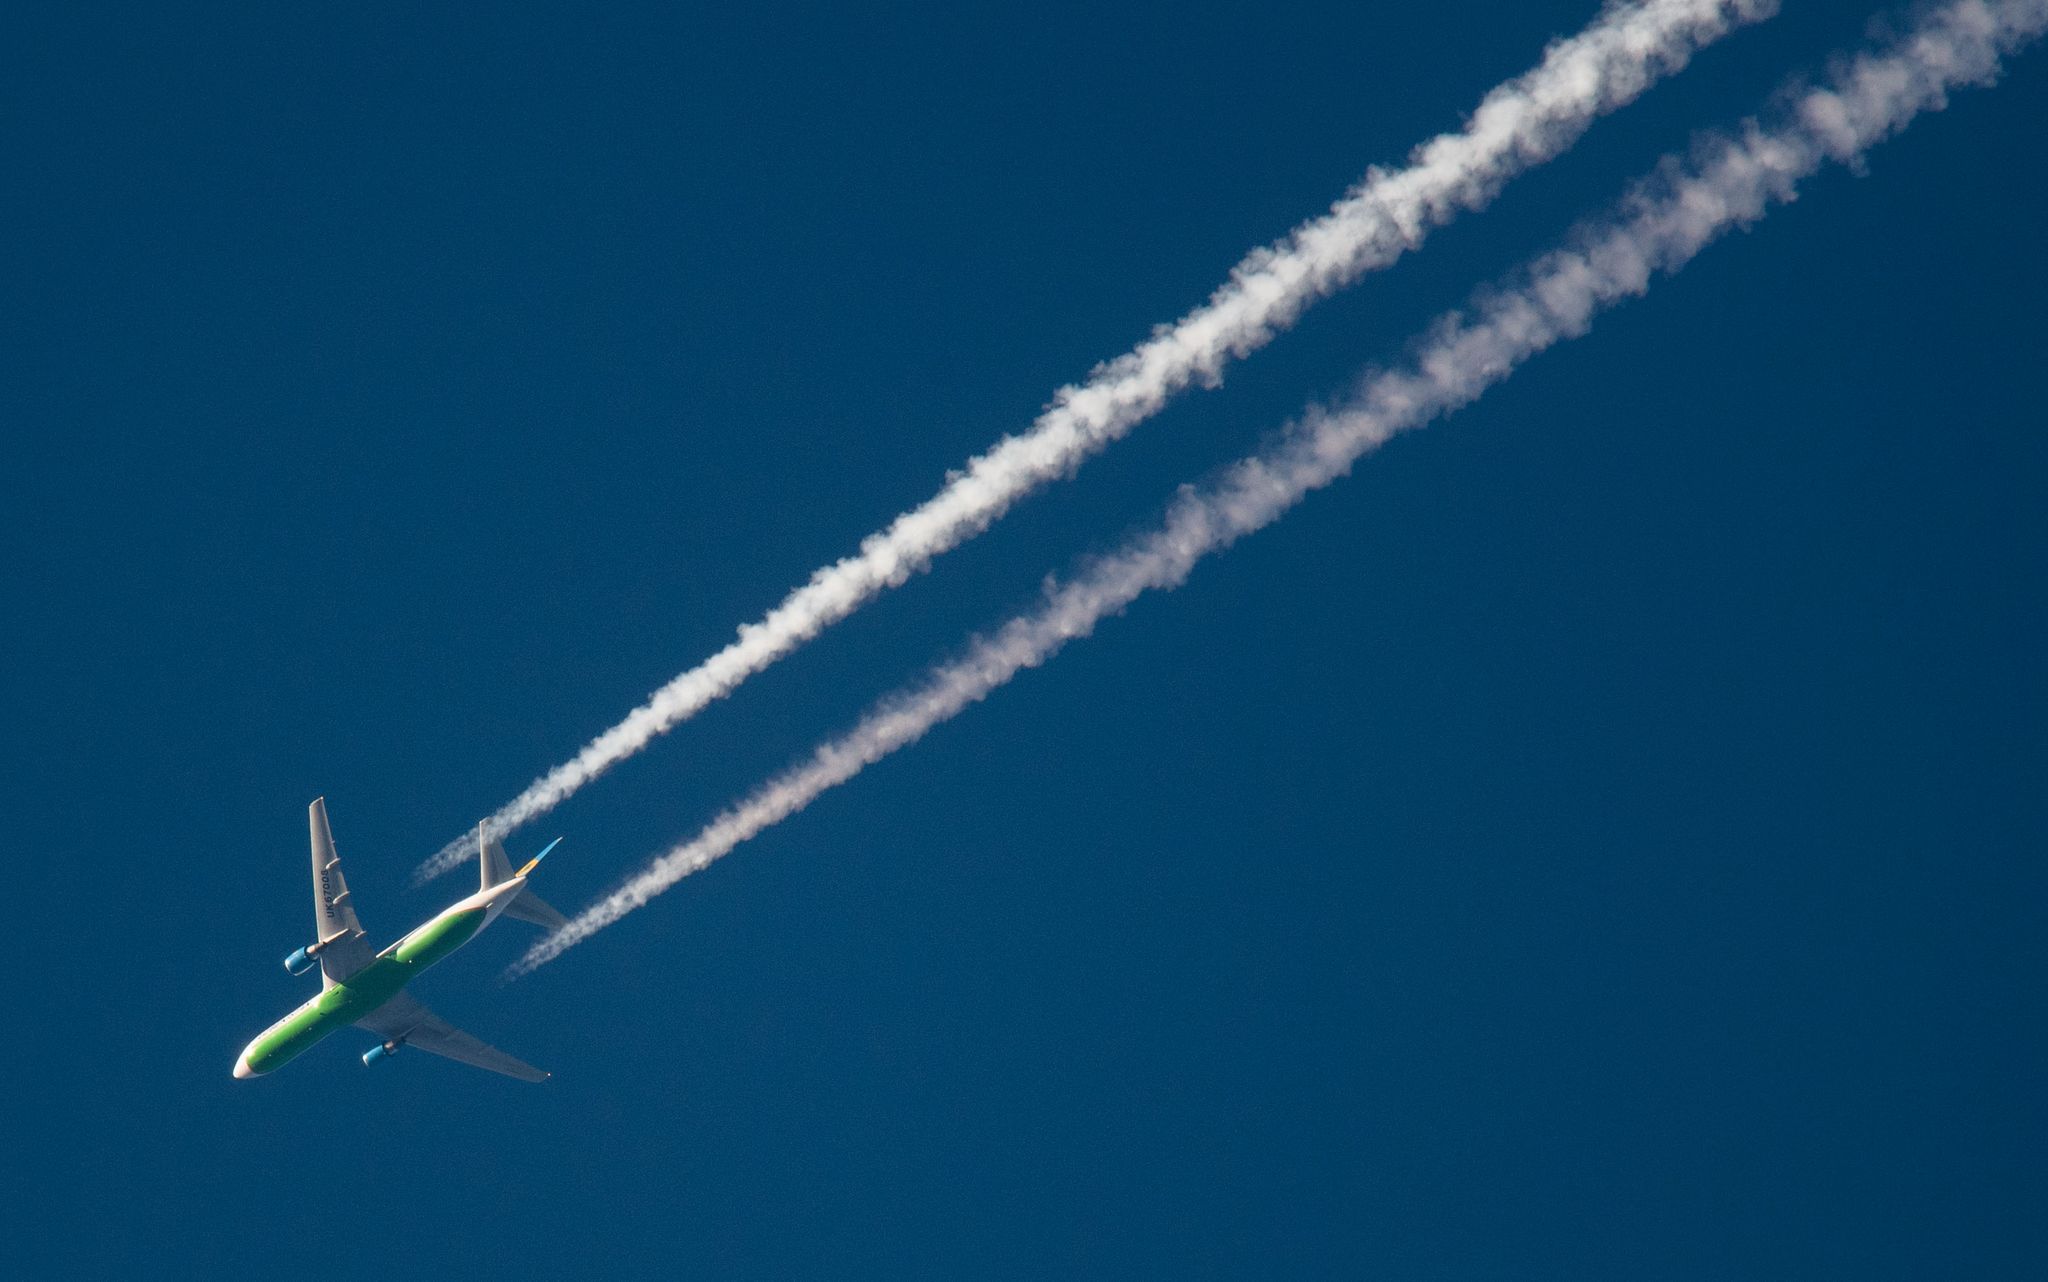 Ein Flugzeug hinterlässt Kondensstreifen am Himmel. Spätestens Mitte des Jahrhunderts soll schließlich mit grünem Wasserstoff geflogen werden.